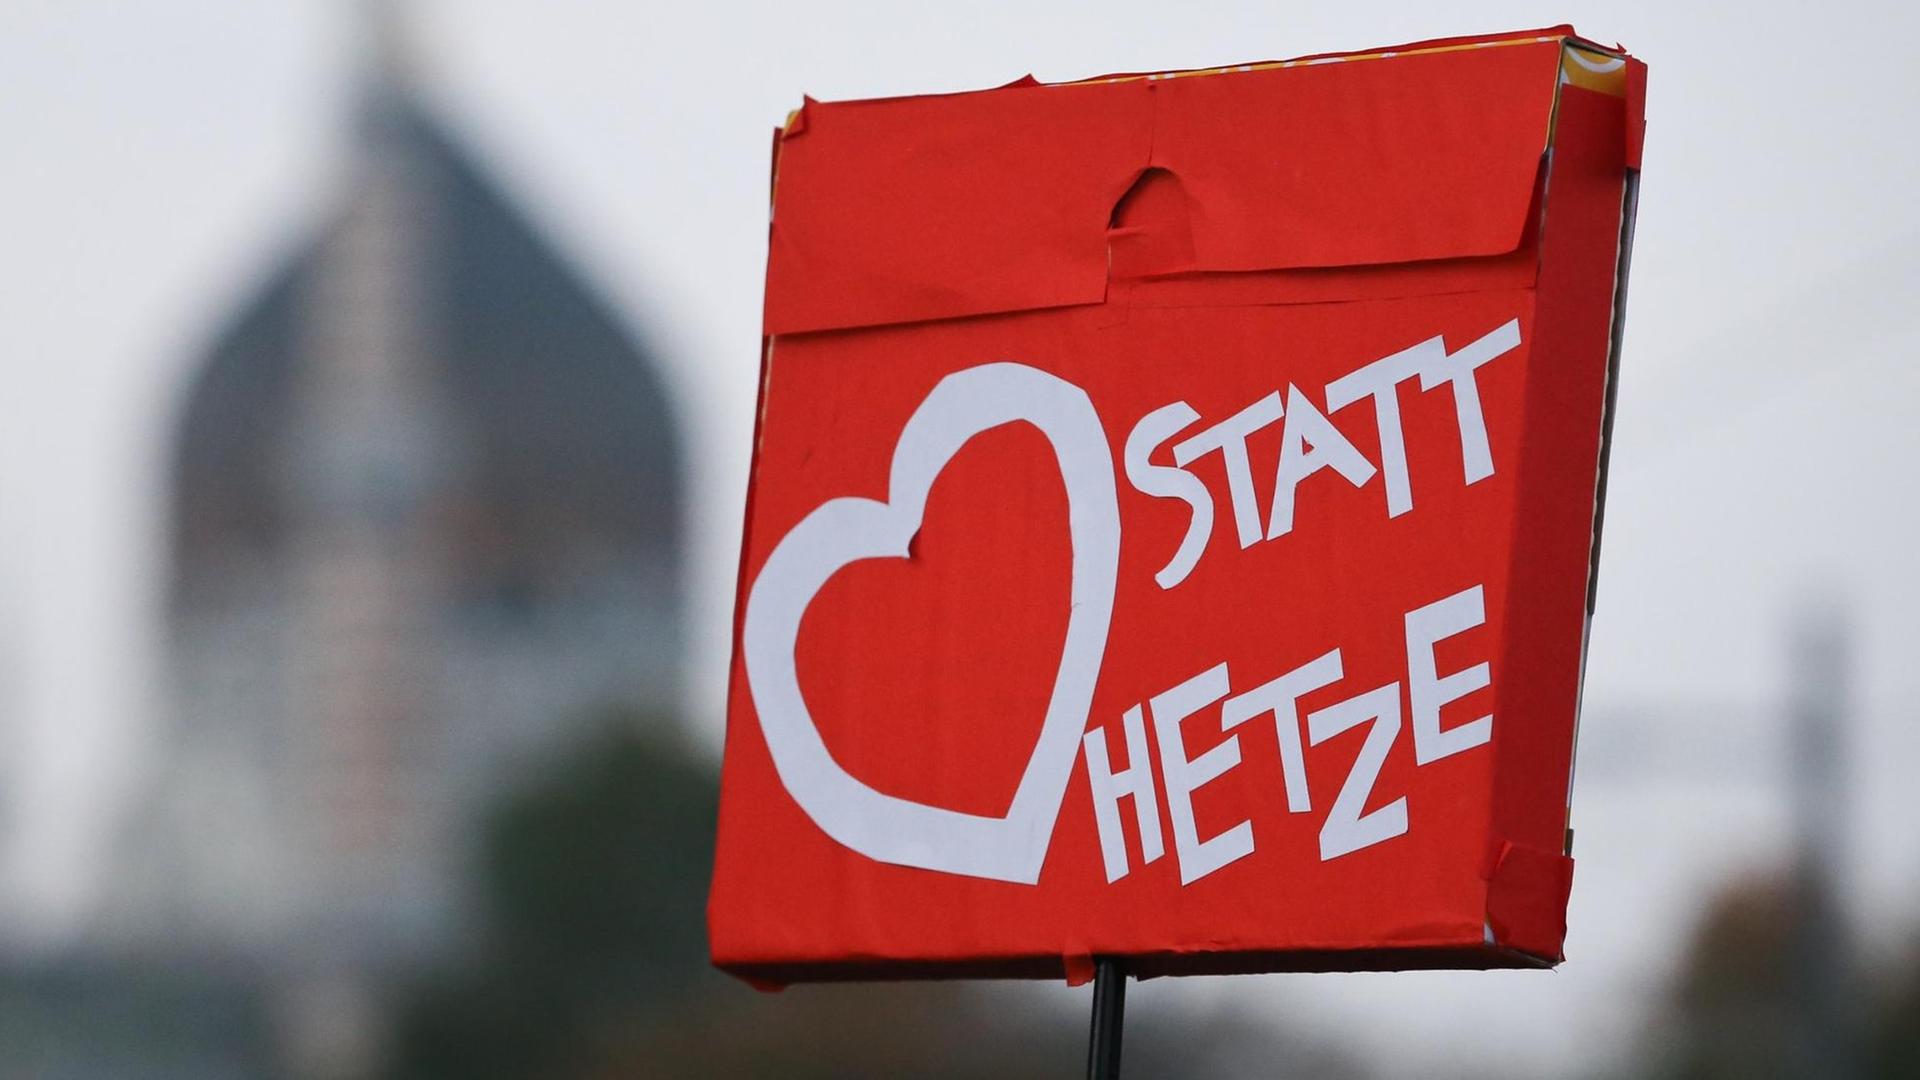 Ein "Herz statt Hetze"-Plakat auf einer Pegida-Gegendemo in Dresden